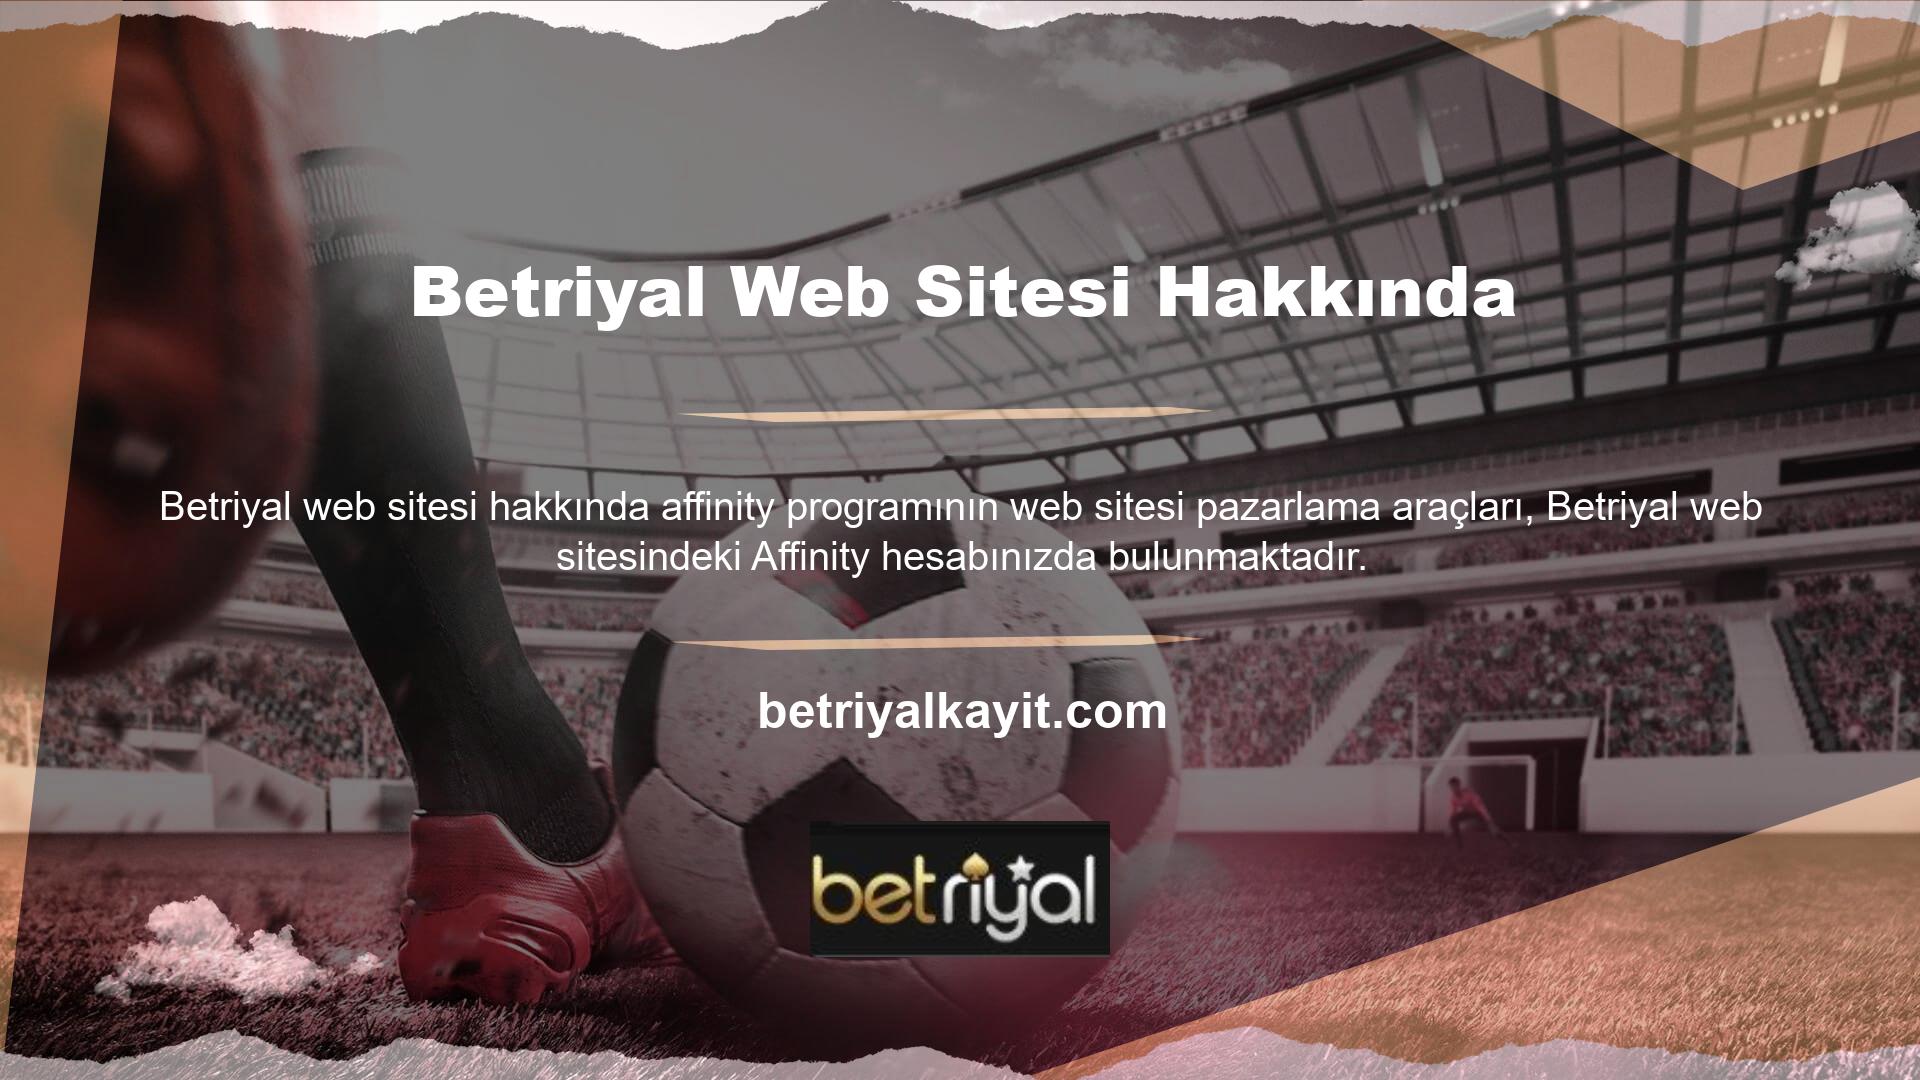 Betriyal Mobil La Liga, Şampiyonlar Ligi, Dünya Kupası, Betriyal Ligi, Serie A ve diğer büyük futbol liglerinin en iyi maçları Betriyal web sitesinde yayınlanmaktadır